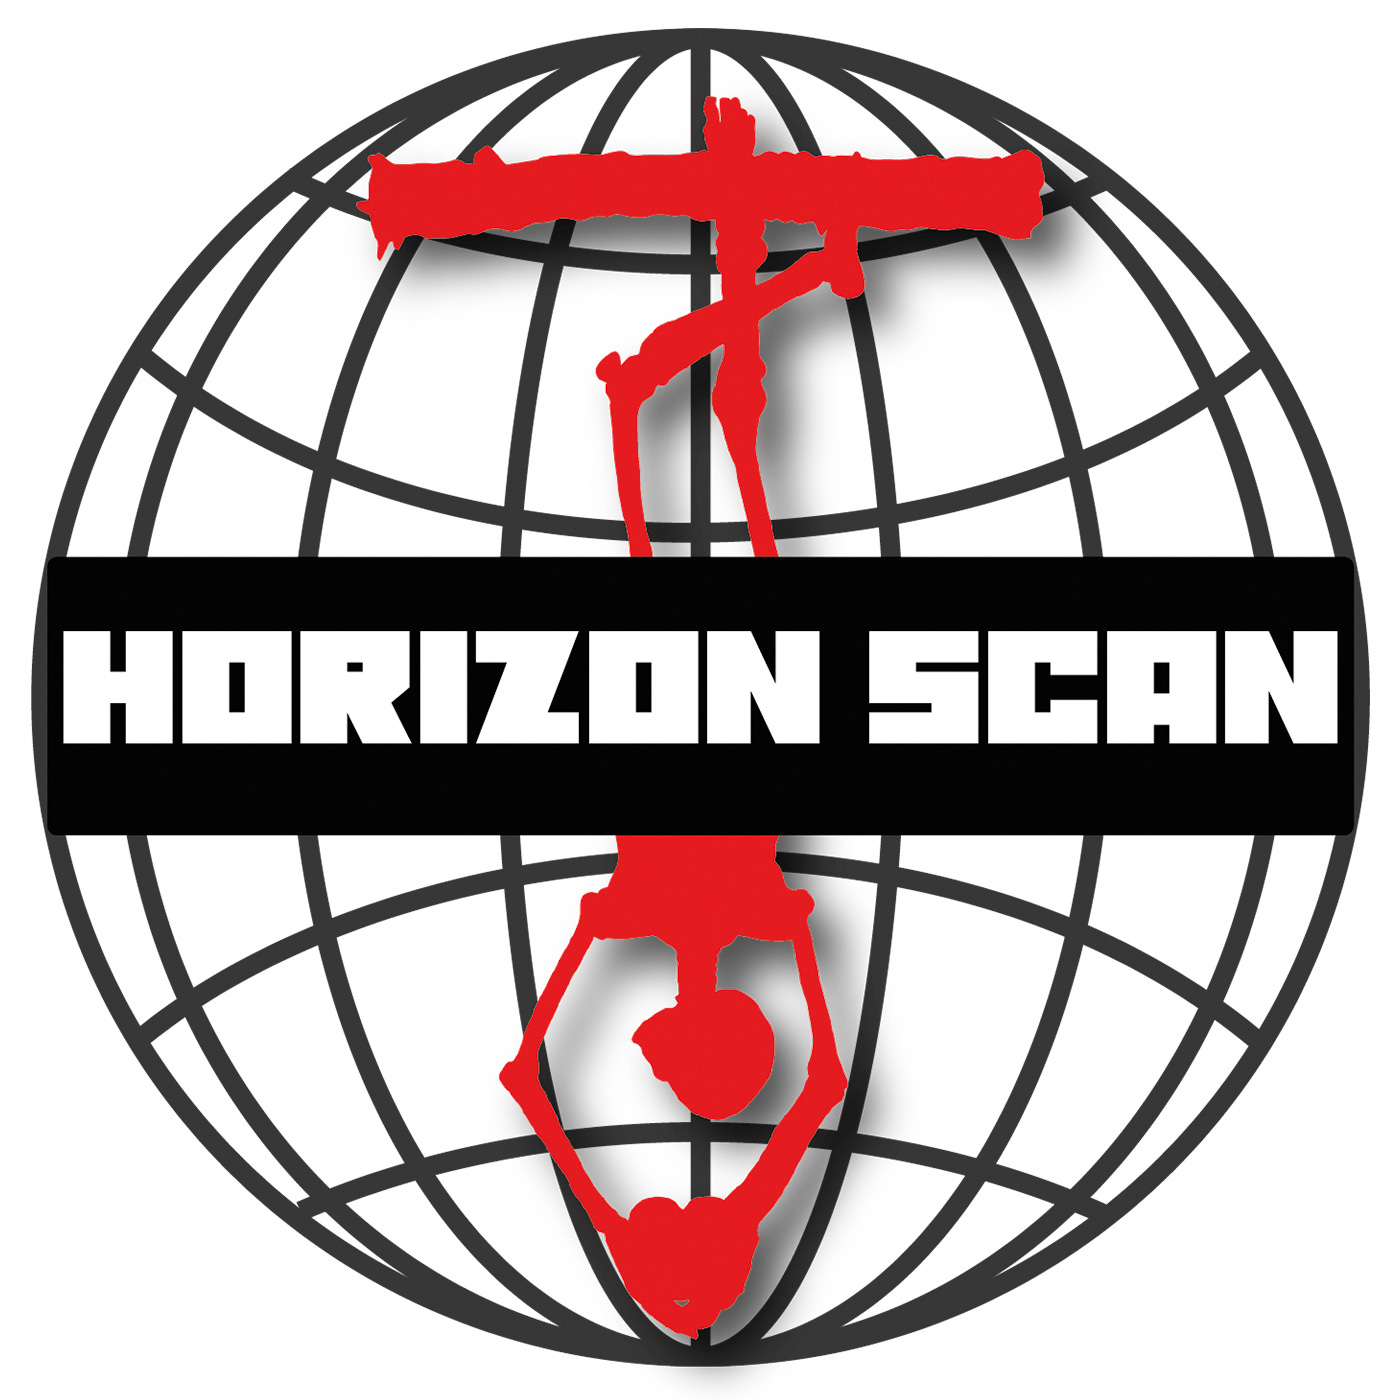 Horizon Scan Ep. 39 |⚡️Moscow Attack | ⚡️Baltimore Bridge | ⚡️Western Decline